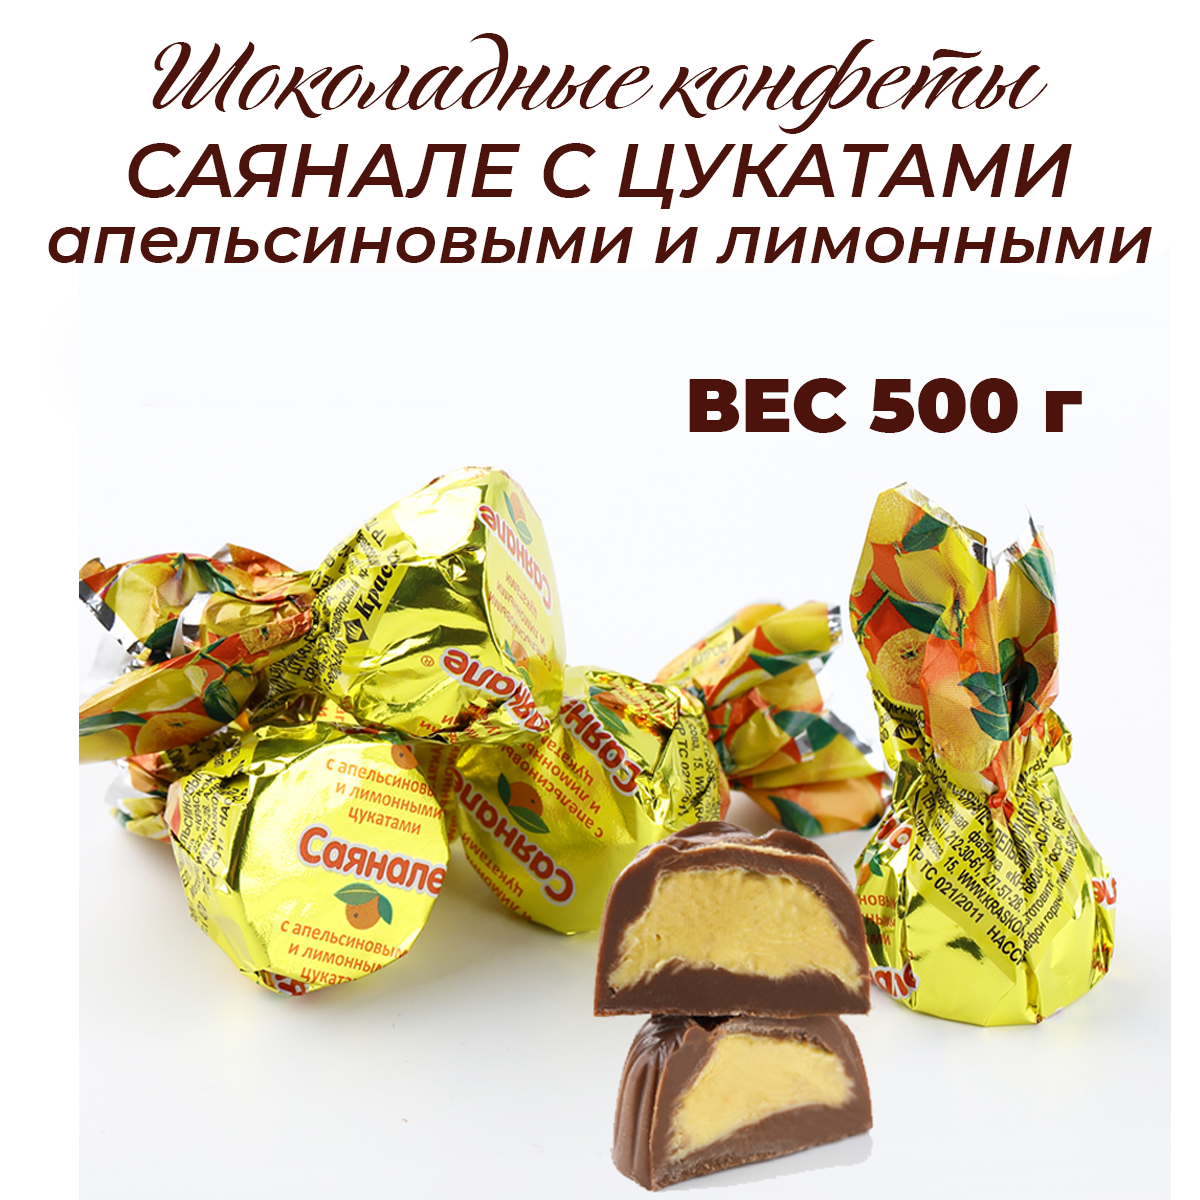 Шоколадные конфеты Саянале с апельсиновыми и лимонными цукатами 500г